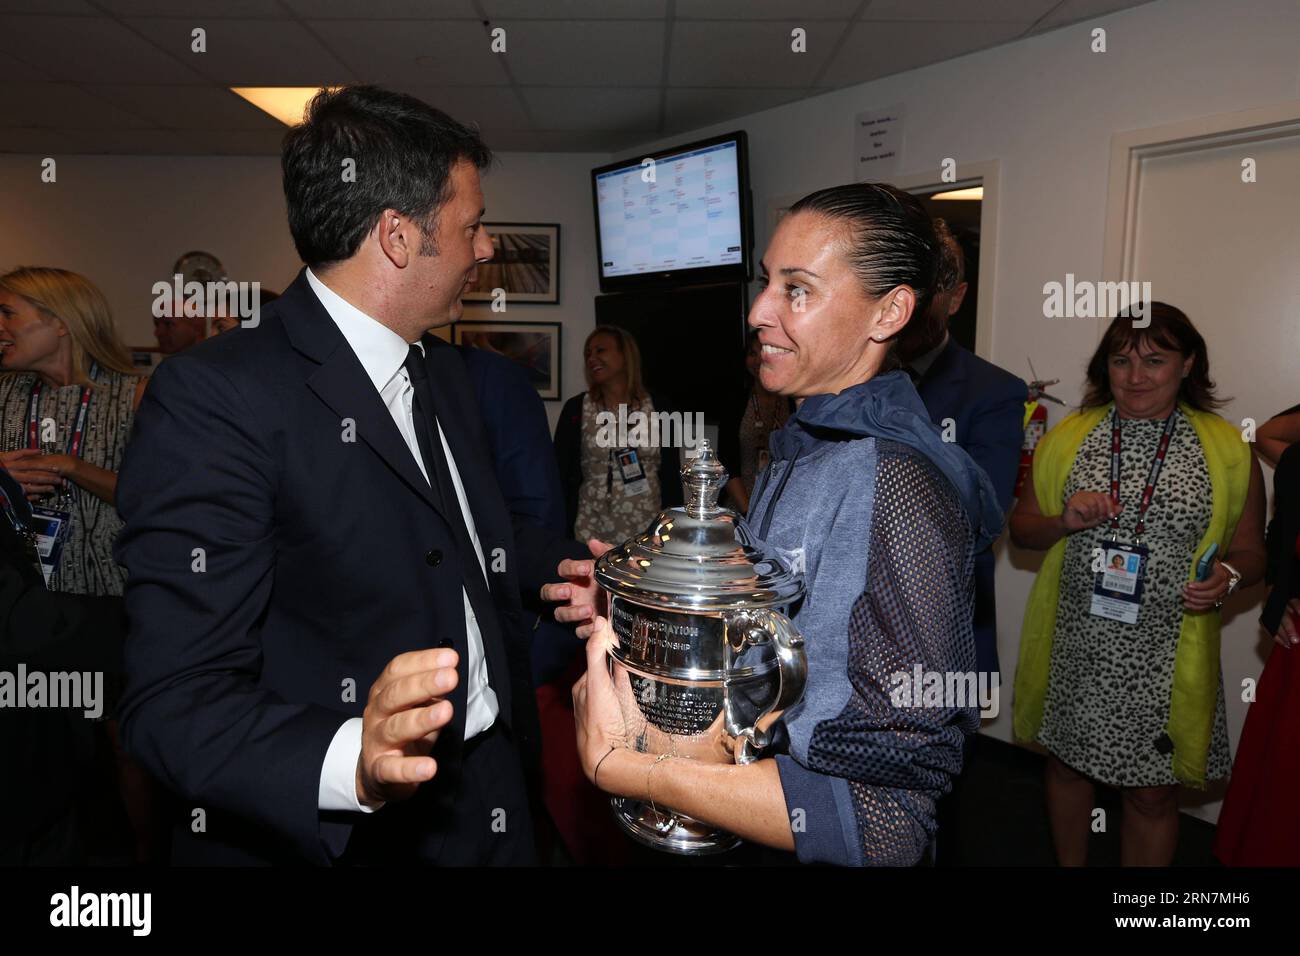 (150912) -- NEW YORK, 12. September 2015 -- der italienische Premierminister Matteo Renzi(L) spricht mit Flavia Pennetta, nachdem sie das Finale der Frauen bei den US Open 2015 in New York, den Vereinigten Staaten, am 12. September 2015 gewonnen hat. Flavia Pennetta beanspruchte den Titel der Veranstaltung, nachdem sie ihre Landsfrau Roberta Vinci mit 2:0 geschlagen hatte. (SP)US-NEW YORK-TENNIS-US OPEN-WOMEN S SINGLES-FINAL LuxYi PUBLICATIONxNOTxINxCHN New YORK 12. September 2015 der italienische Premierminister Matteo Renzi l spricht mit Flavia Pennetta, nachdem sie das Women S Singles Final Match BEI den U.S. Open 2015 in New York den Vereinigten Staaten 12. September 2015 FL gewonnen hat Stockfoto